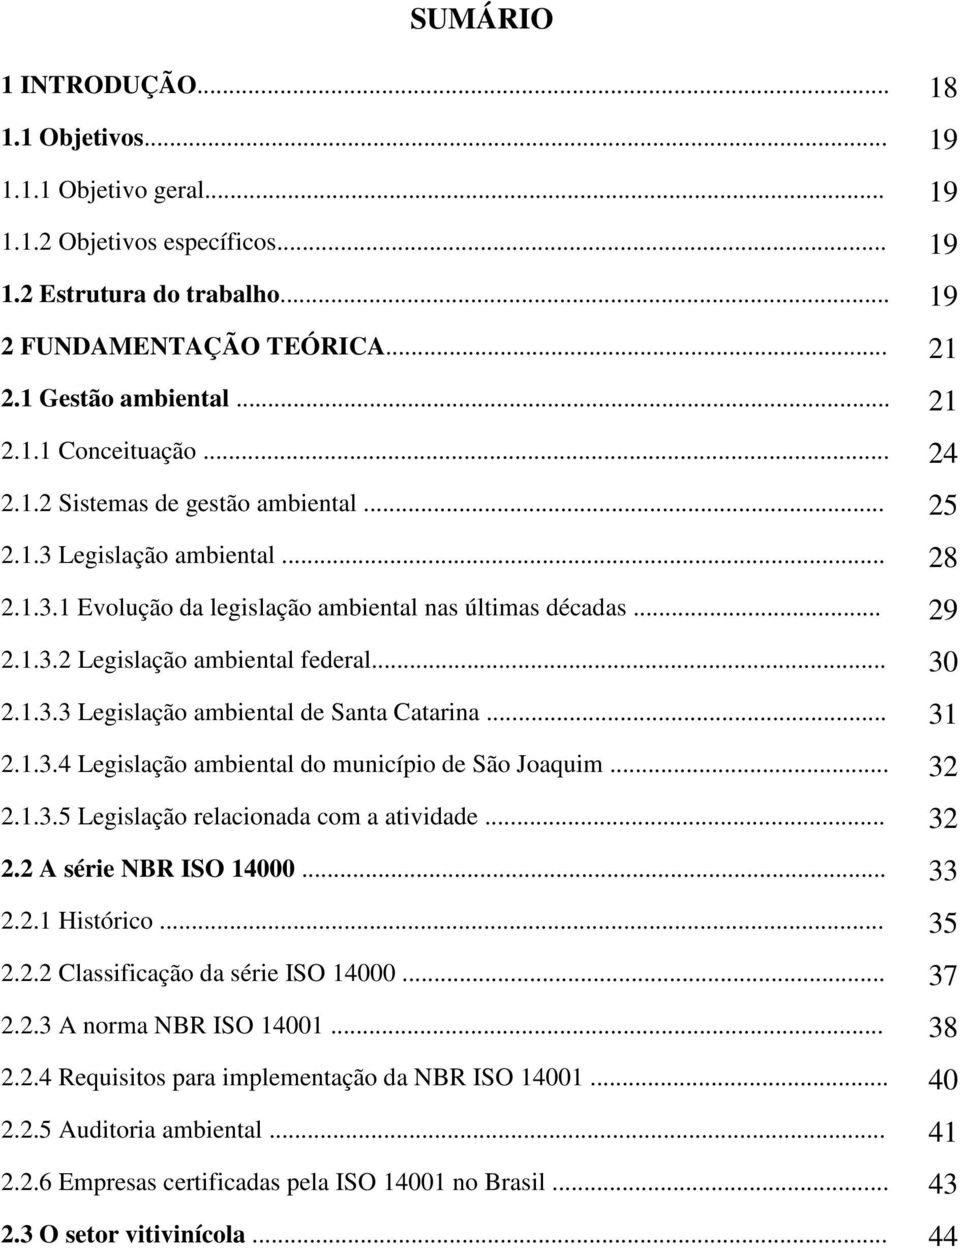 .. 31 2.1.3.4 Legislação ambiental do município de São Joaquim... 32 2.1.3.5 Legislação relacionada com a atividade... 32 2.2 A série NBR ISO 14000... 33 2.2.1 Histórico... 35 2.2.2 Classificação da série ISO 14000.